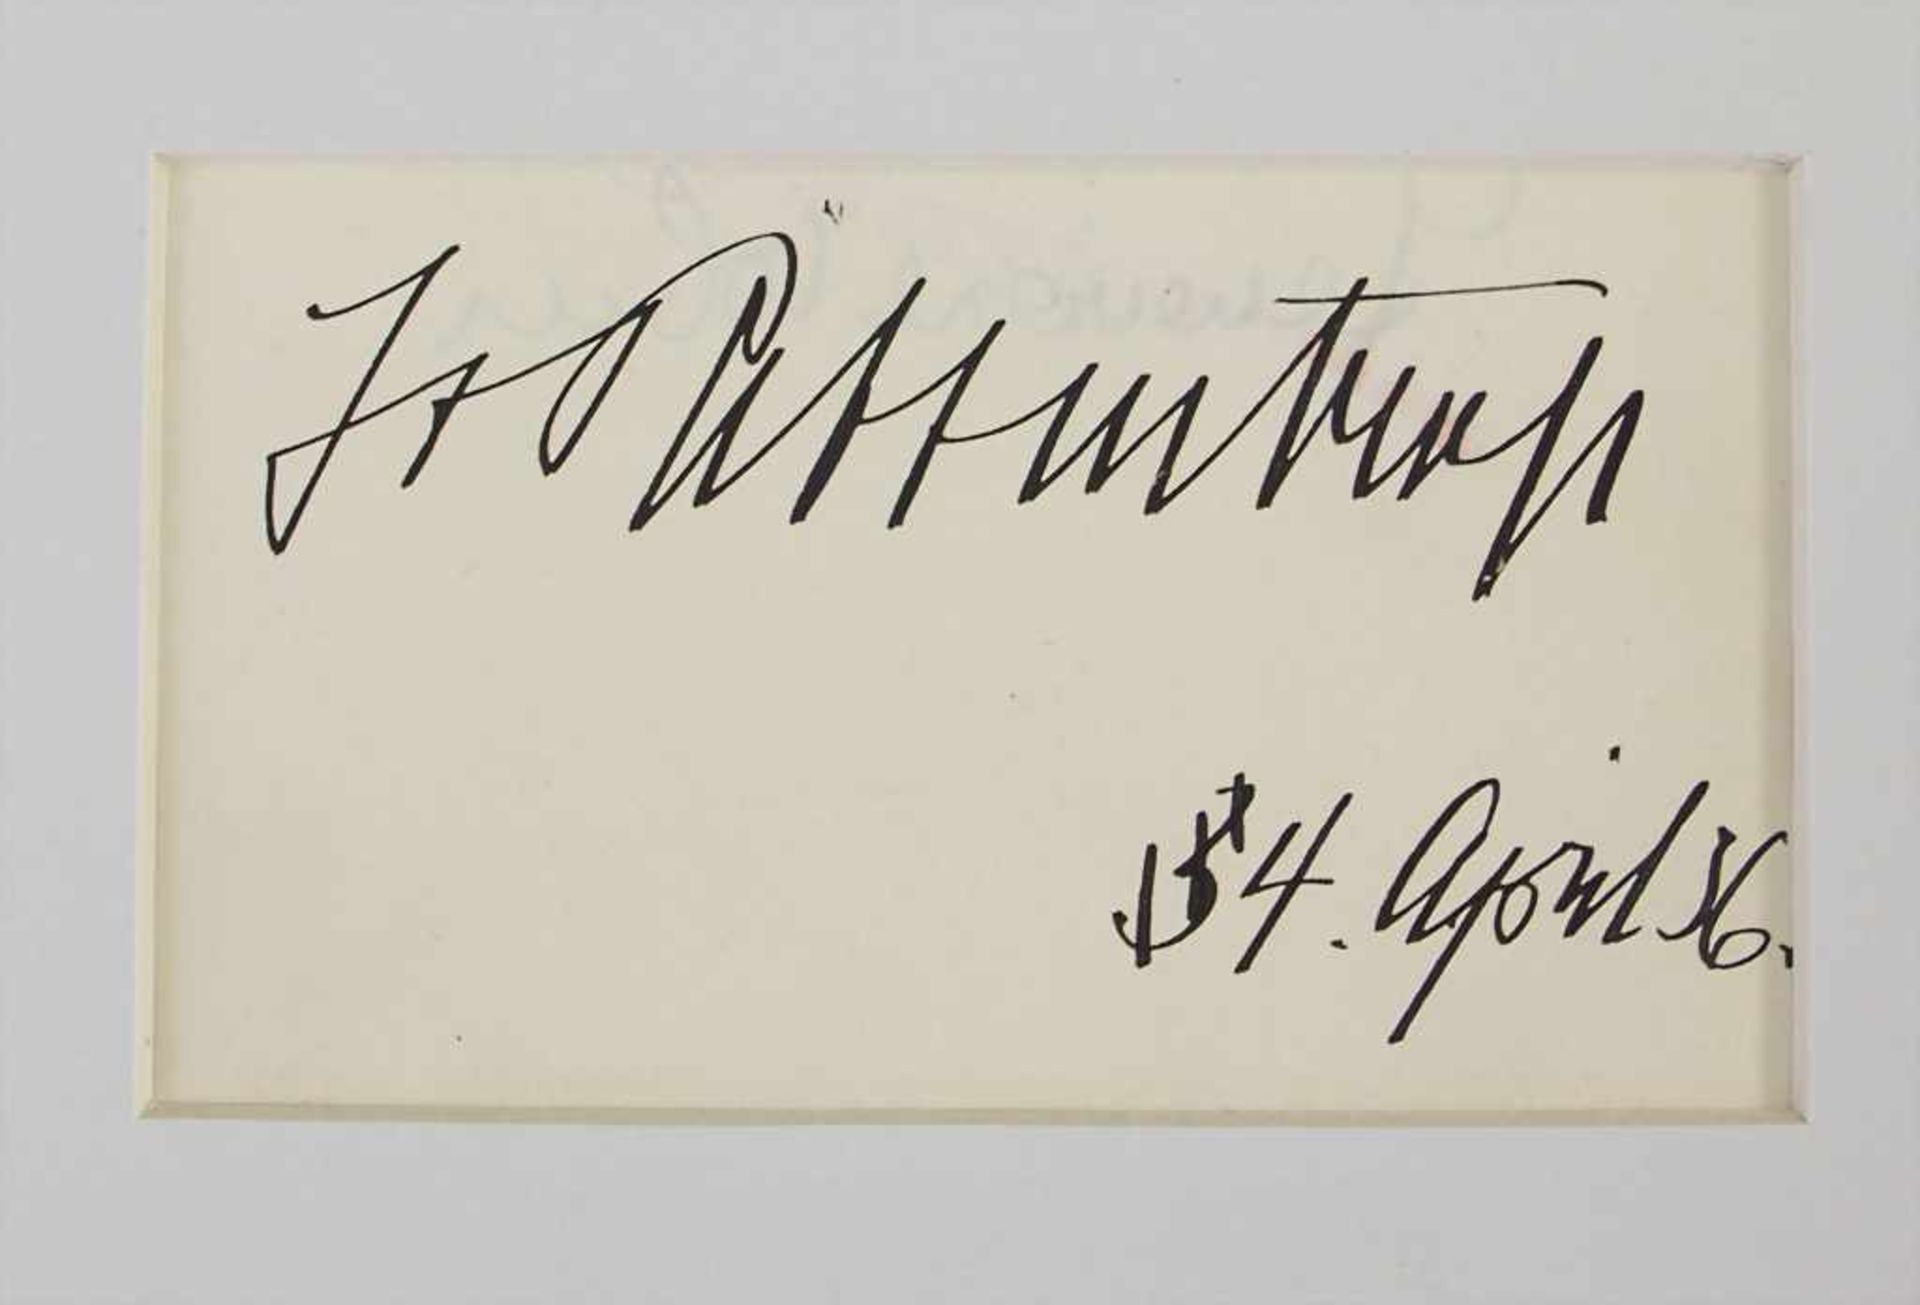 Autograph 'Joachim von Ribbentrop' / An autograph 'Joachim von Ribbentrop', 1934Eigenh - Bild 2 aus 2